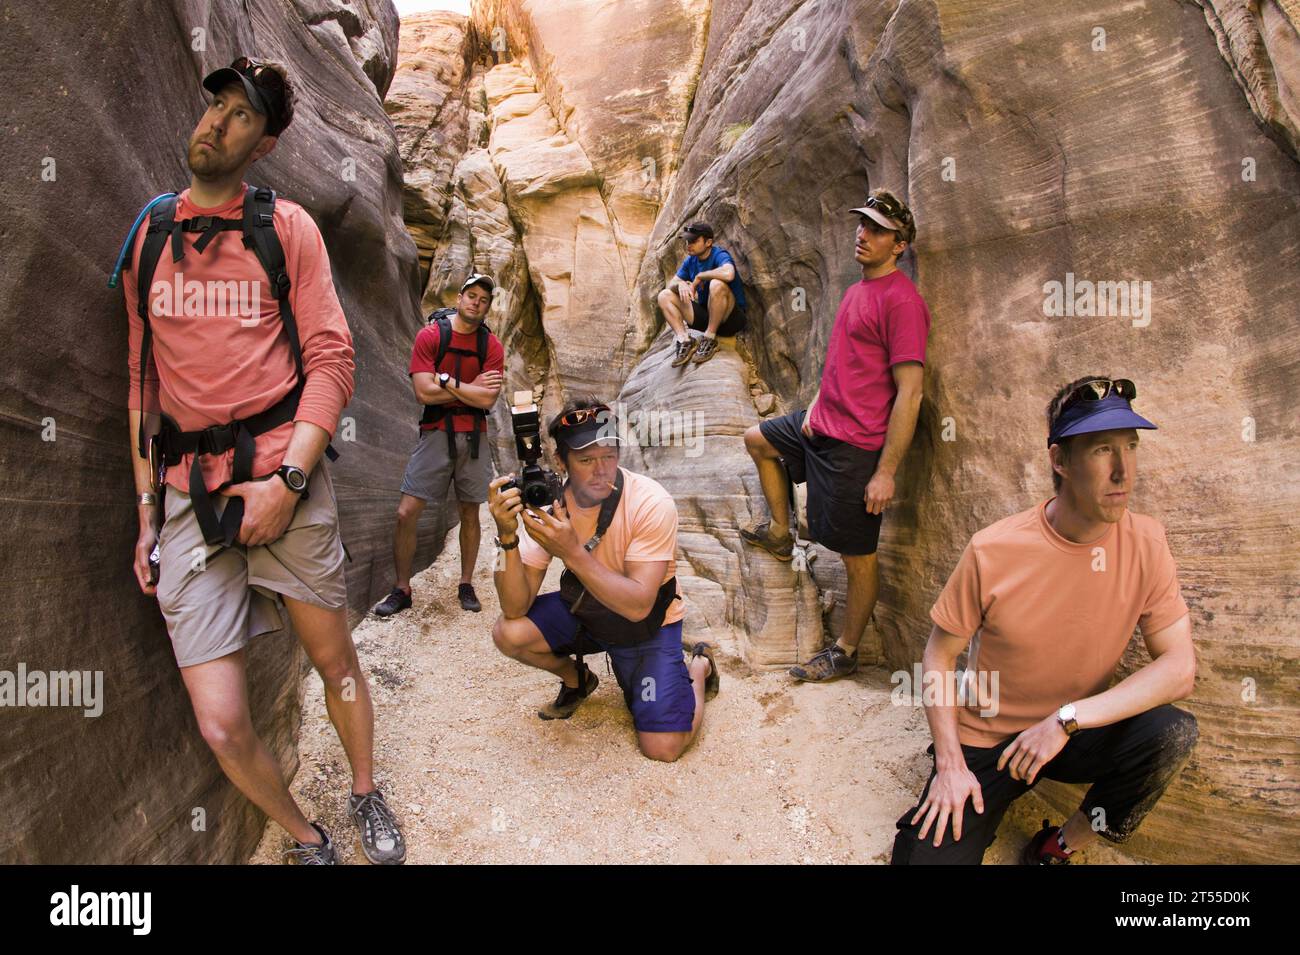 Humorvolles Foto von sechs Männern, die sich als Boyband in einem Sandsteinschlucht in Utah ausgeben. Stockfoto